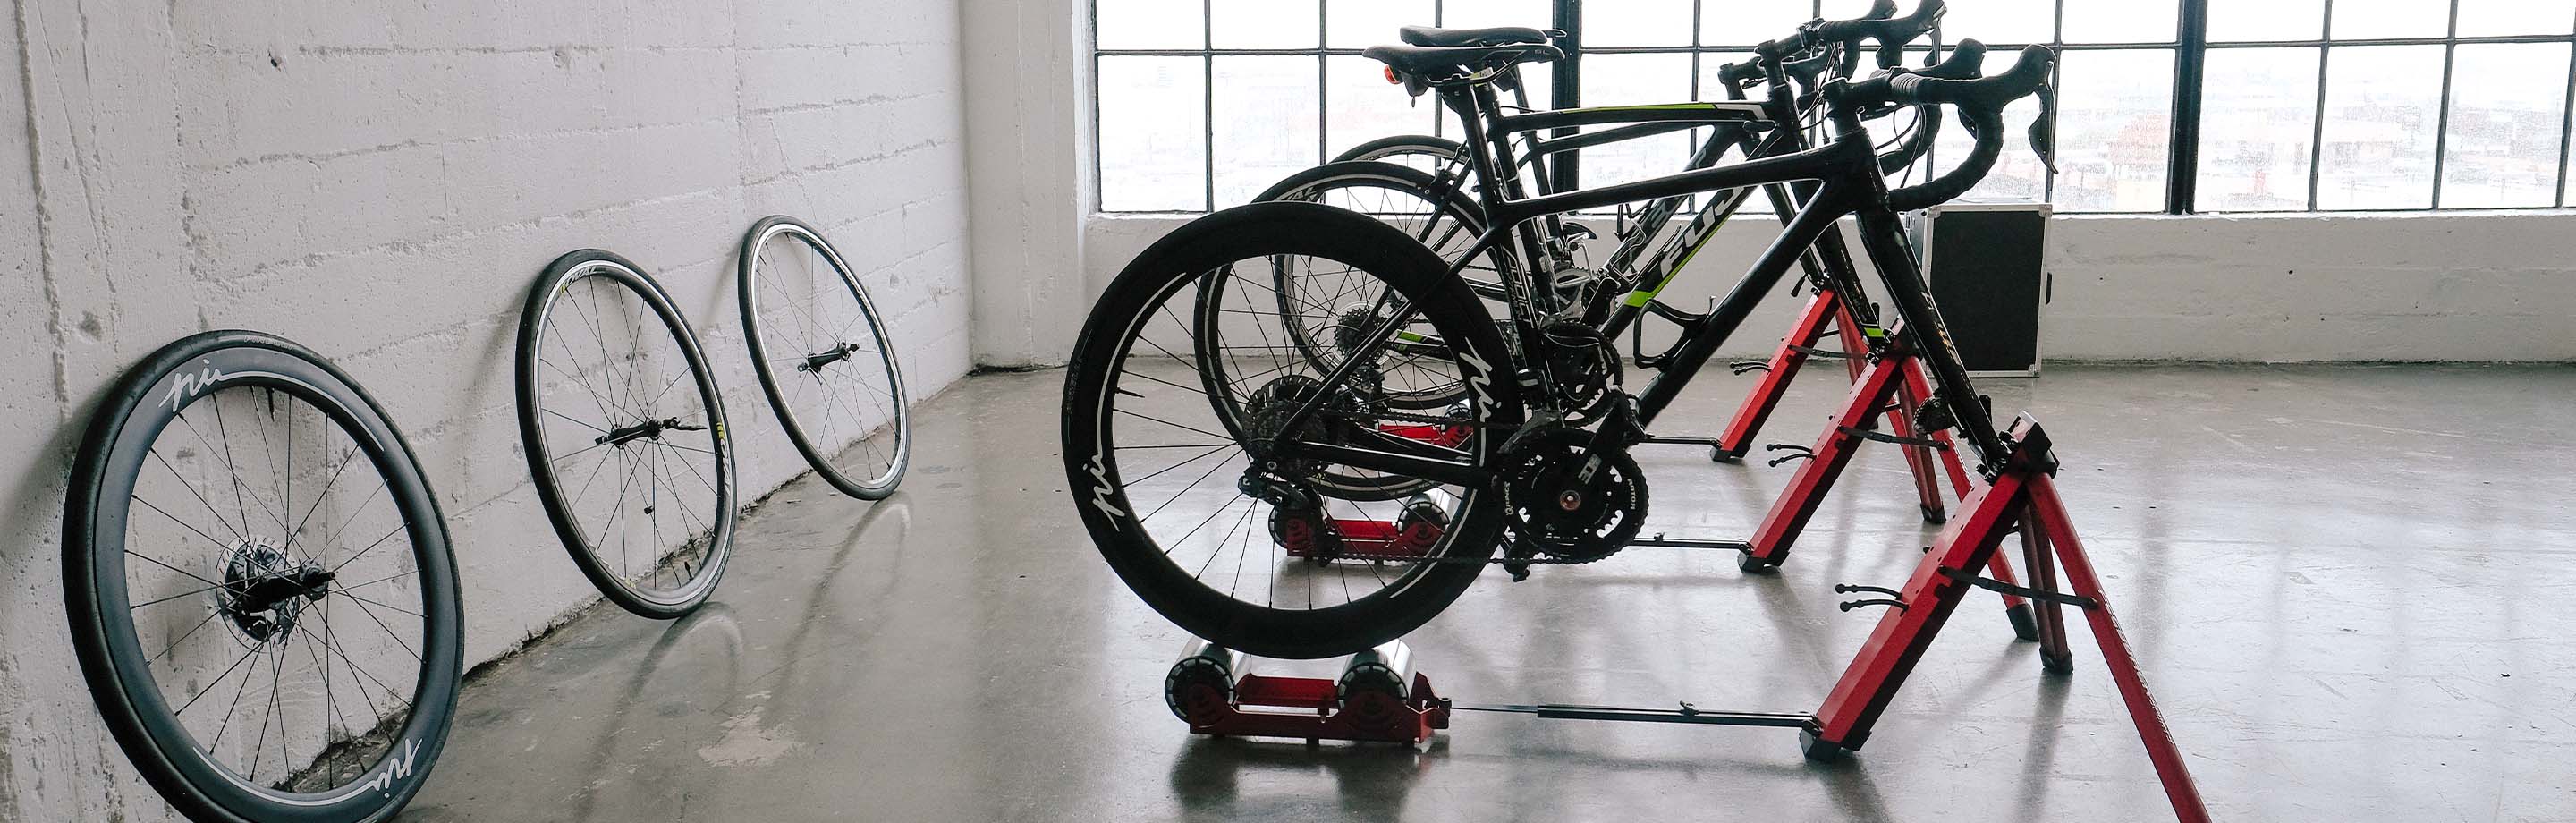 Feedback Sports - praktische producten voor fietsers en mecaniciens